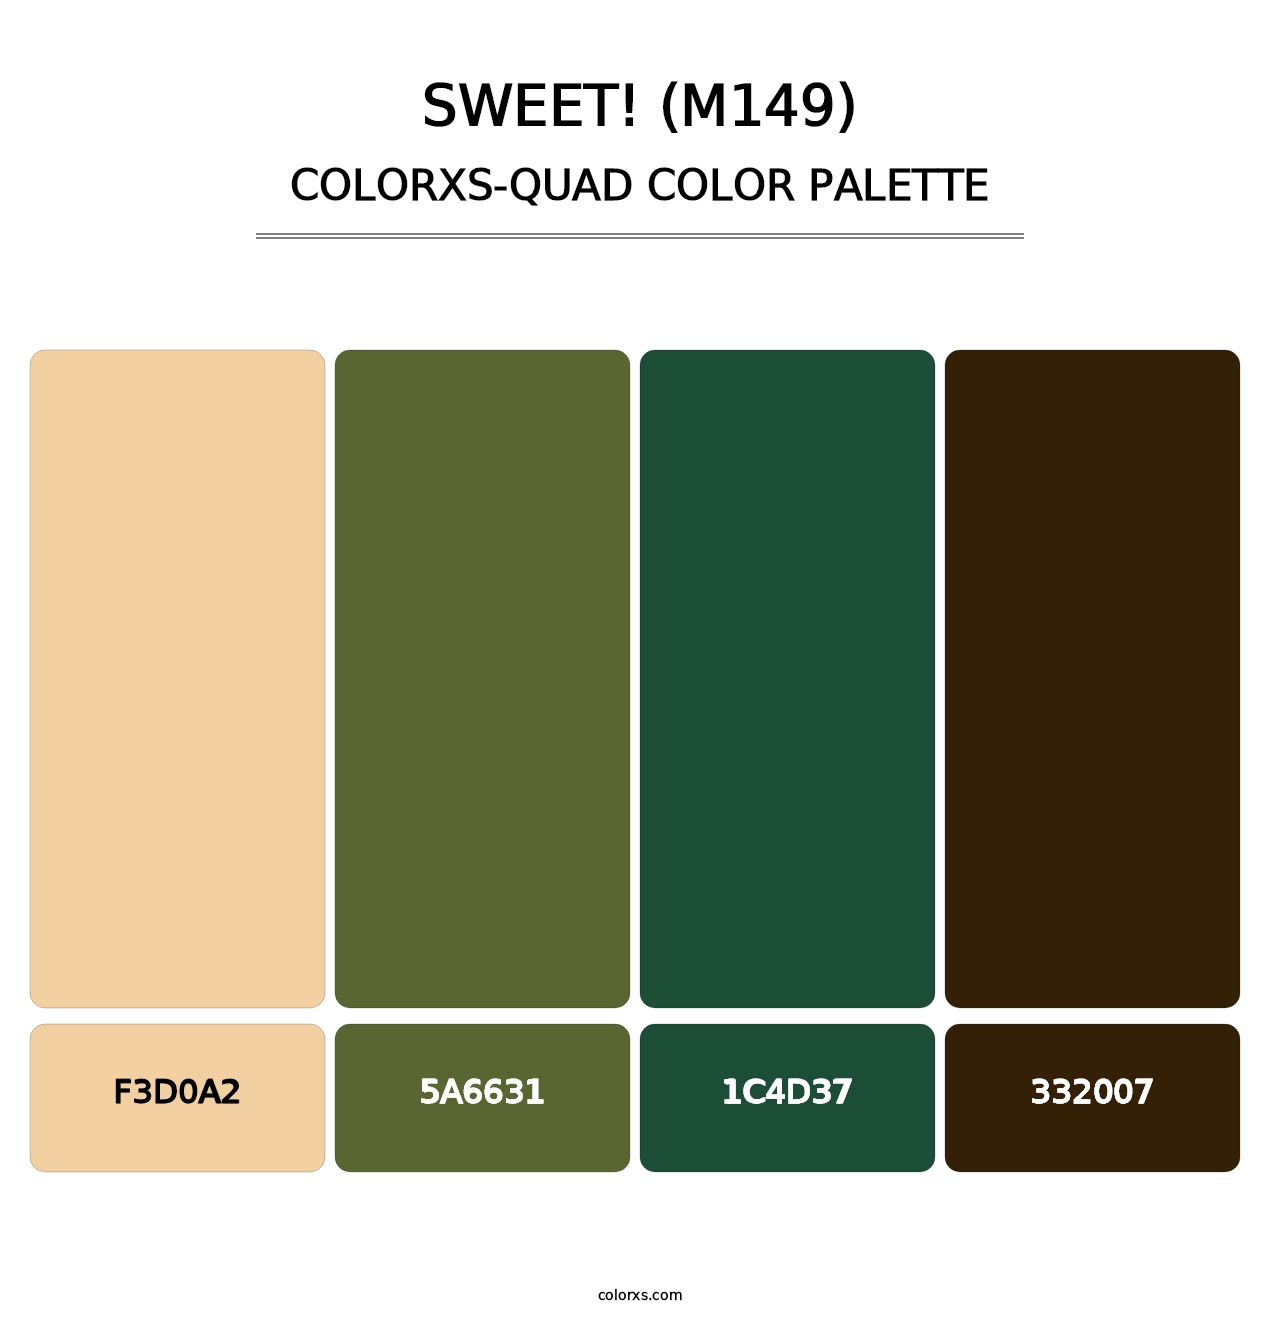 sweet! (M149) - Colorxs Quad Palette